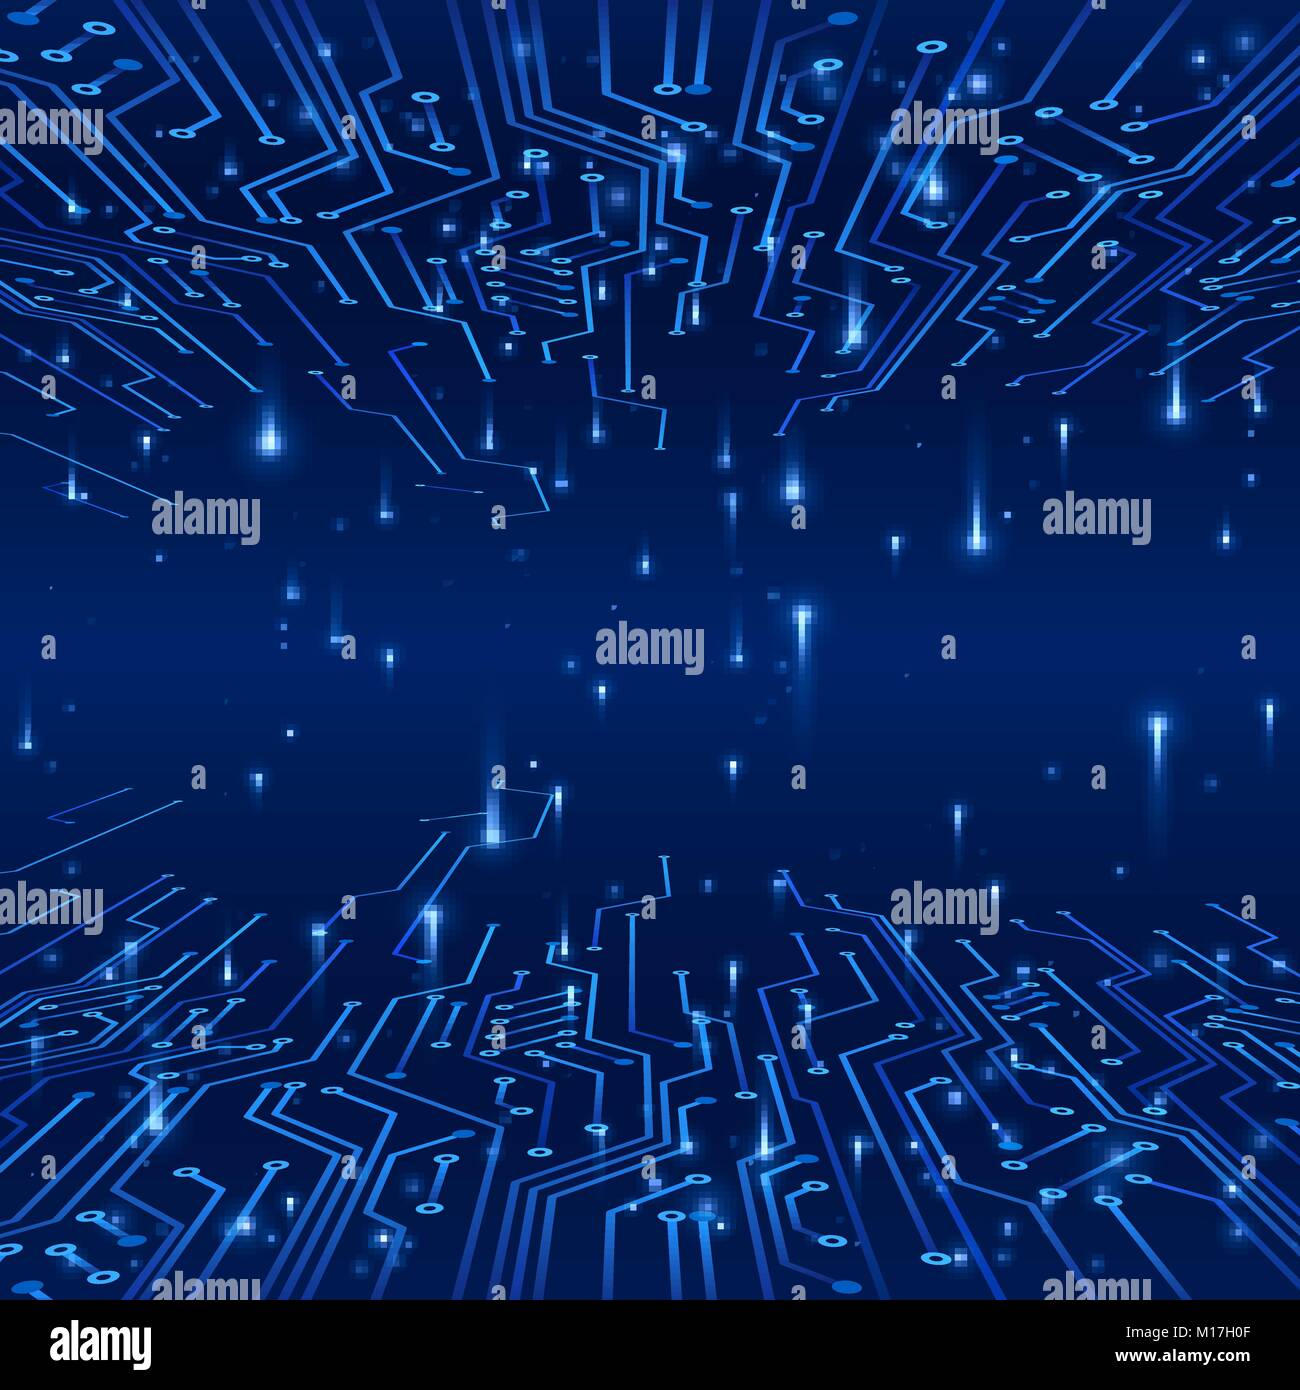 Cyberspace. Konzept eines futuristischen Hintergrund. Titel auf Kreis- und Datenaustausch in Form von Signalen. Vector Illustration Stock Vektor